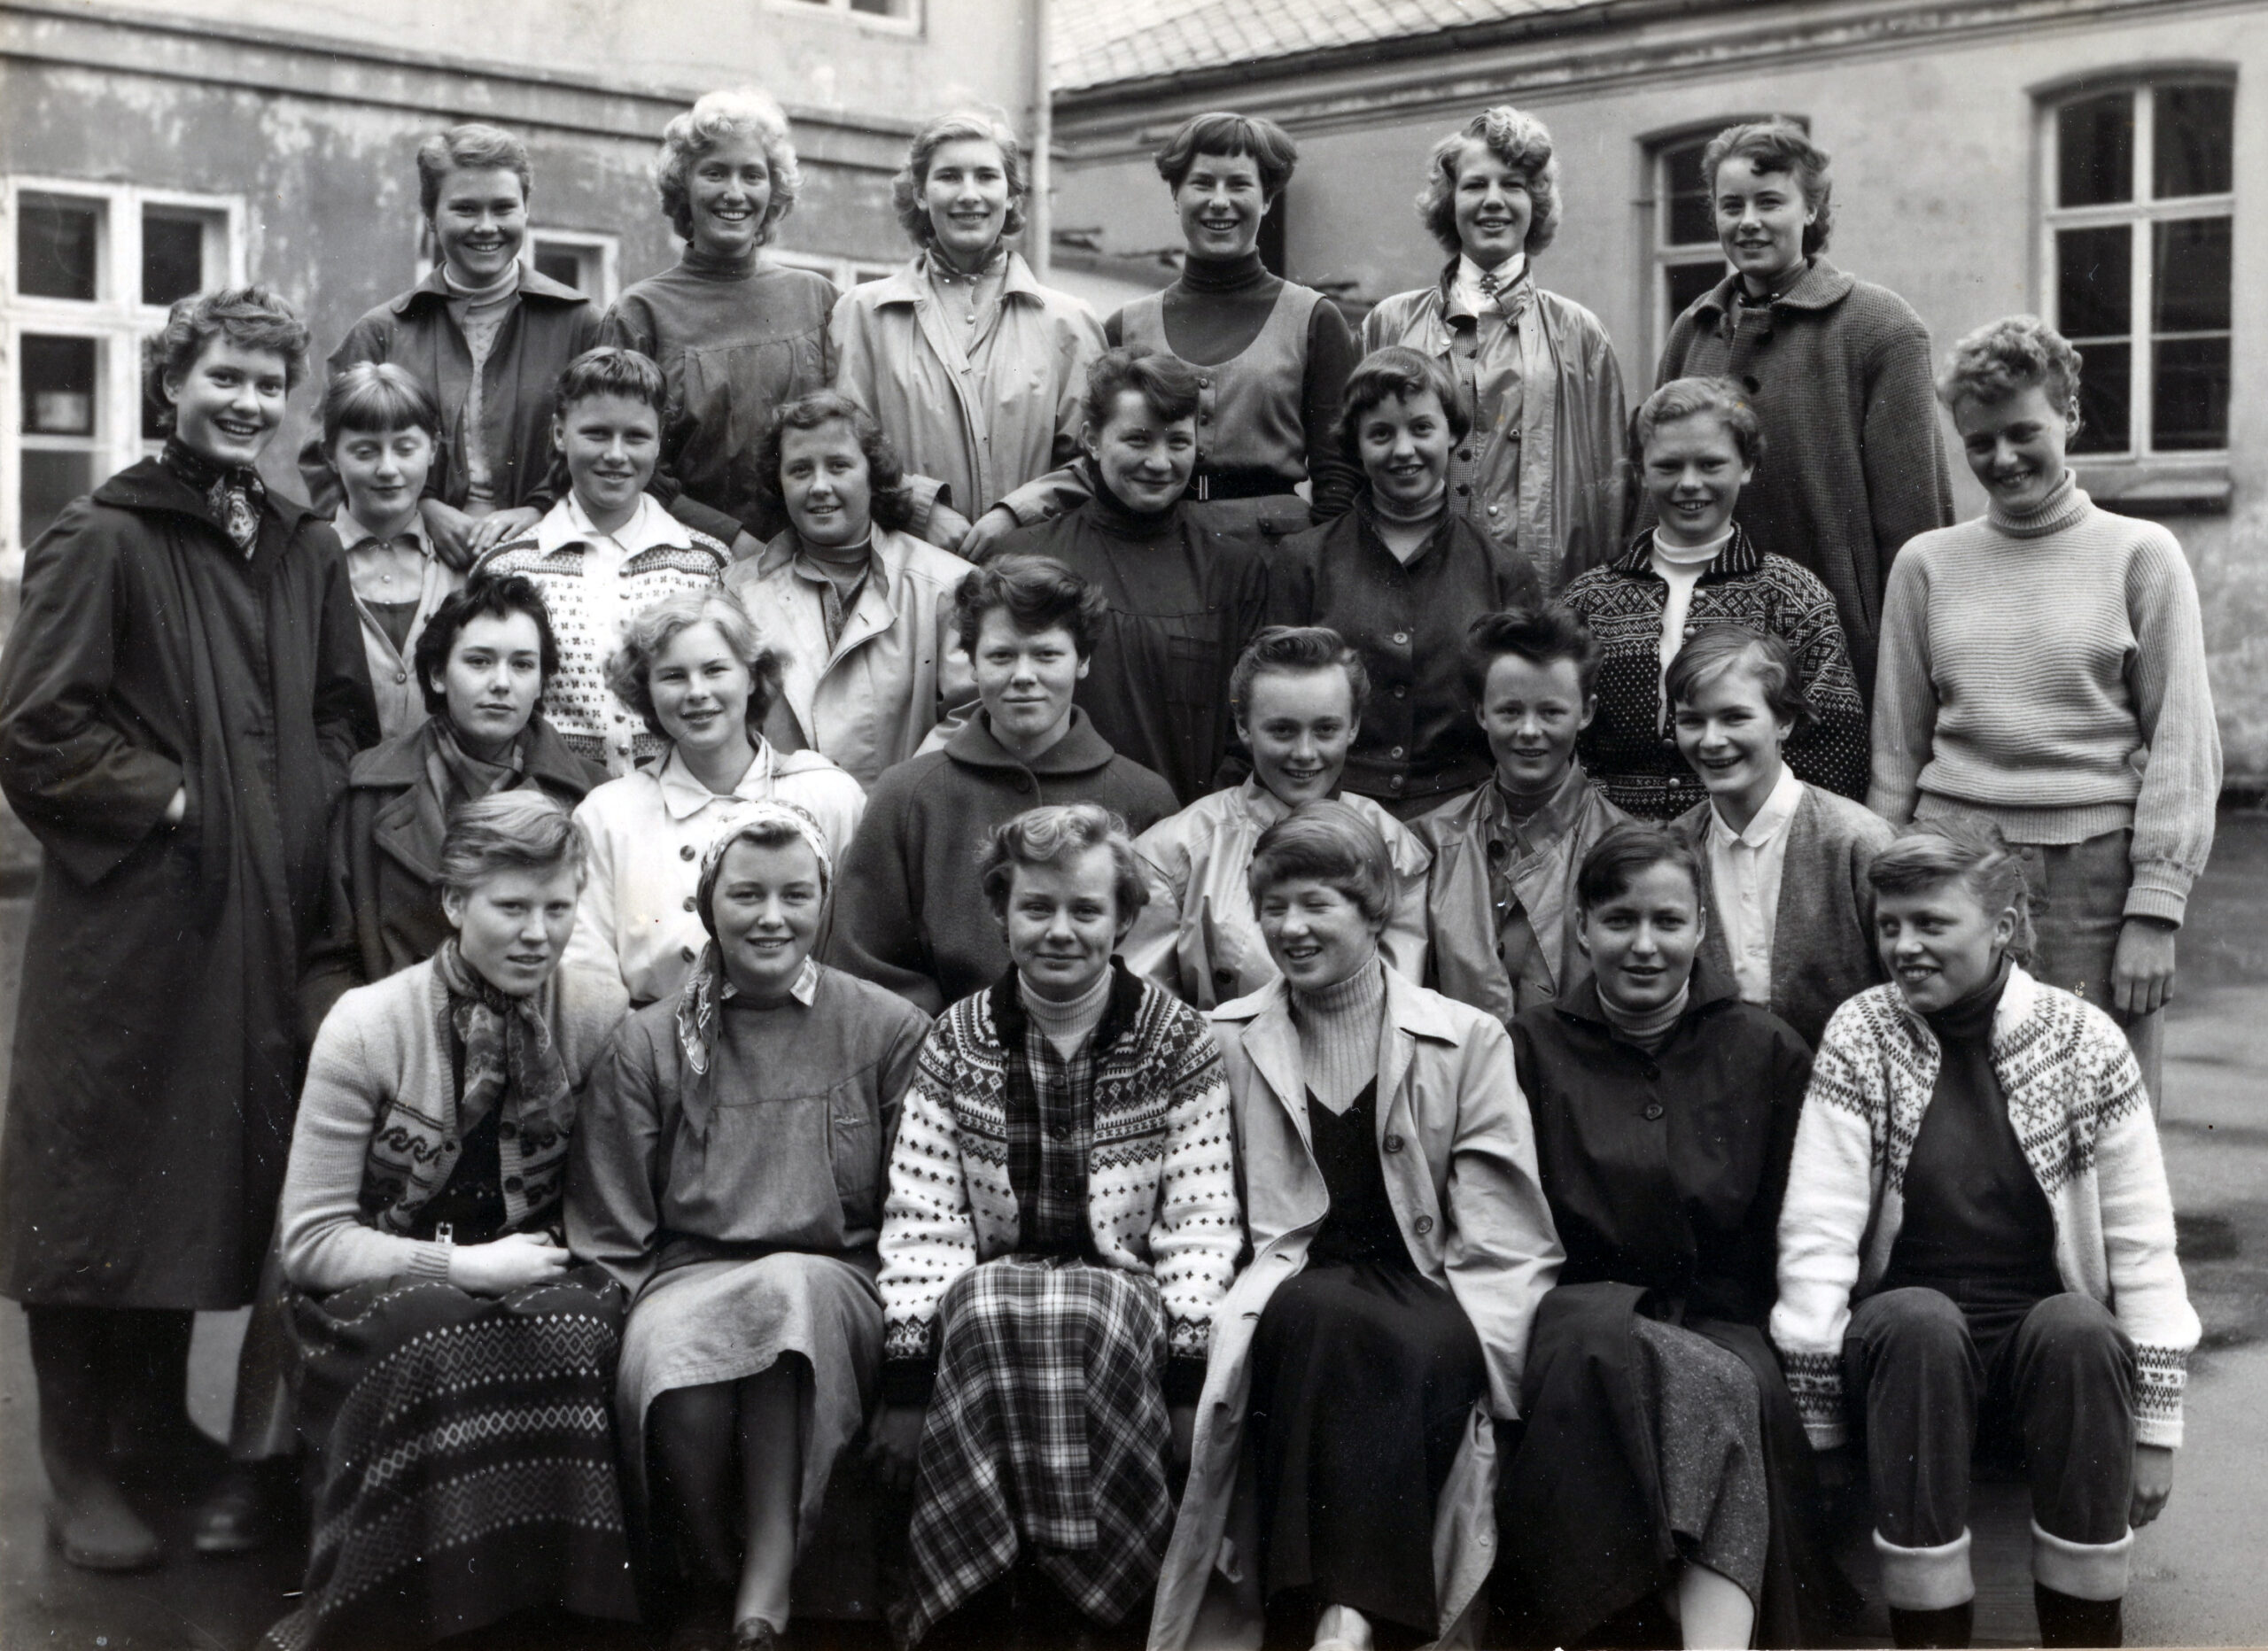 Klasse 3GC ved Kristiansand katedralskole ren jenteklasse 1955. Foto Agderbilder.